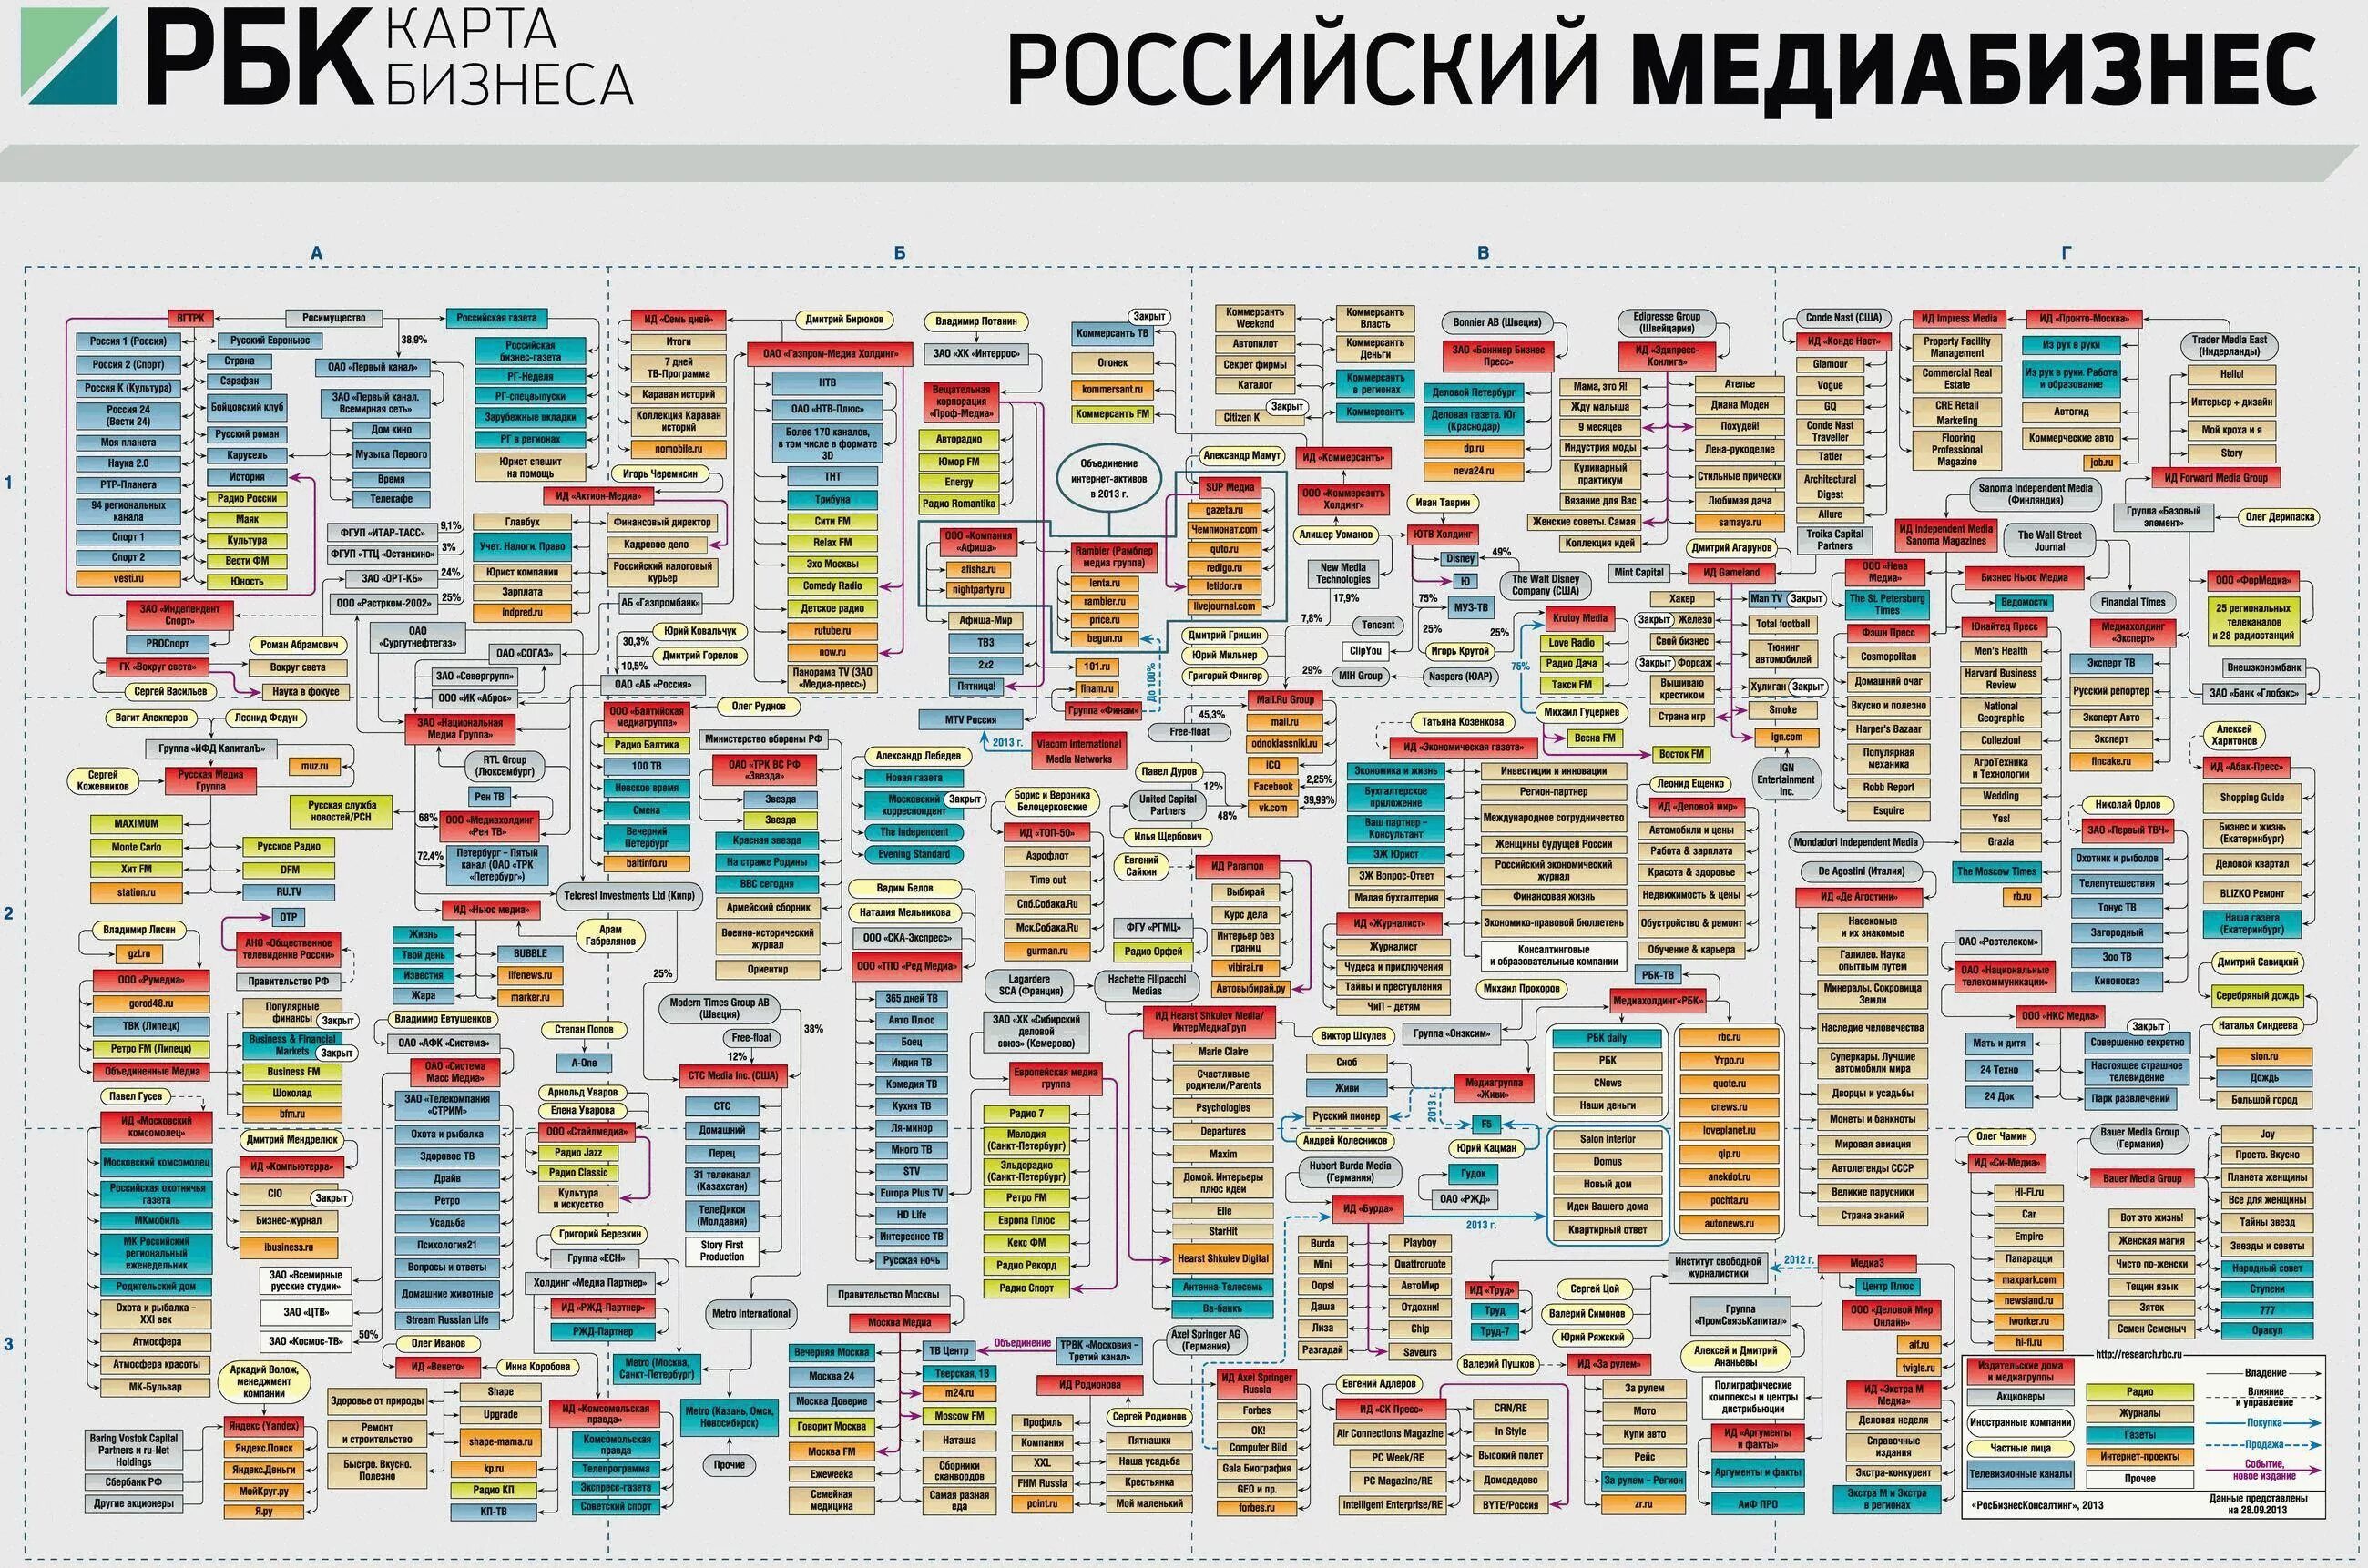 Владельцы сми. Бизнес карта. РБК карта бизнеса. Кому принадлежат СМИ В России. Кто владеет российскими СМИ.